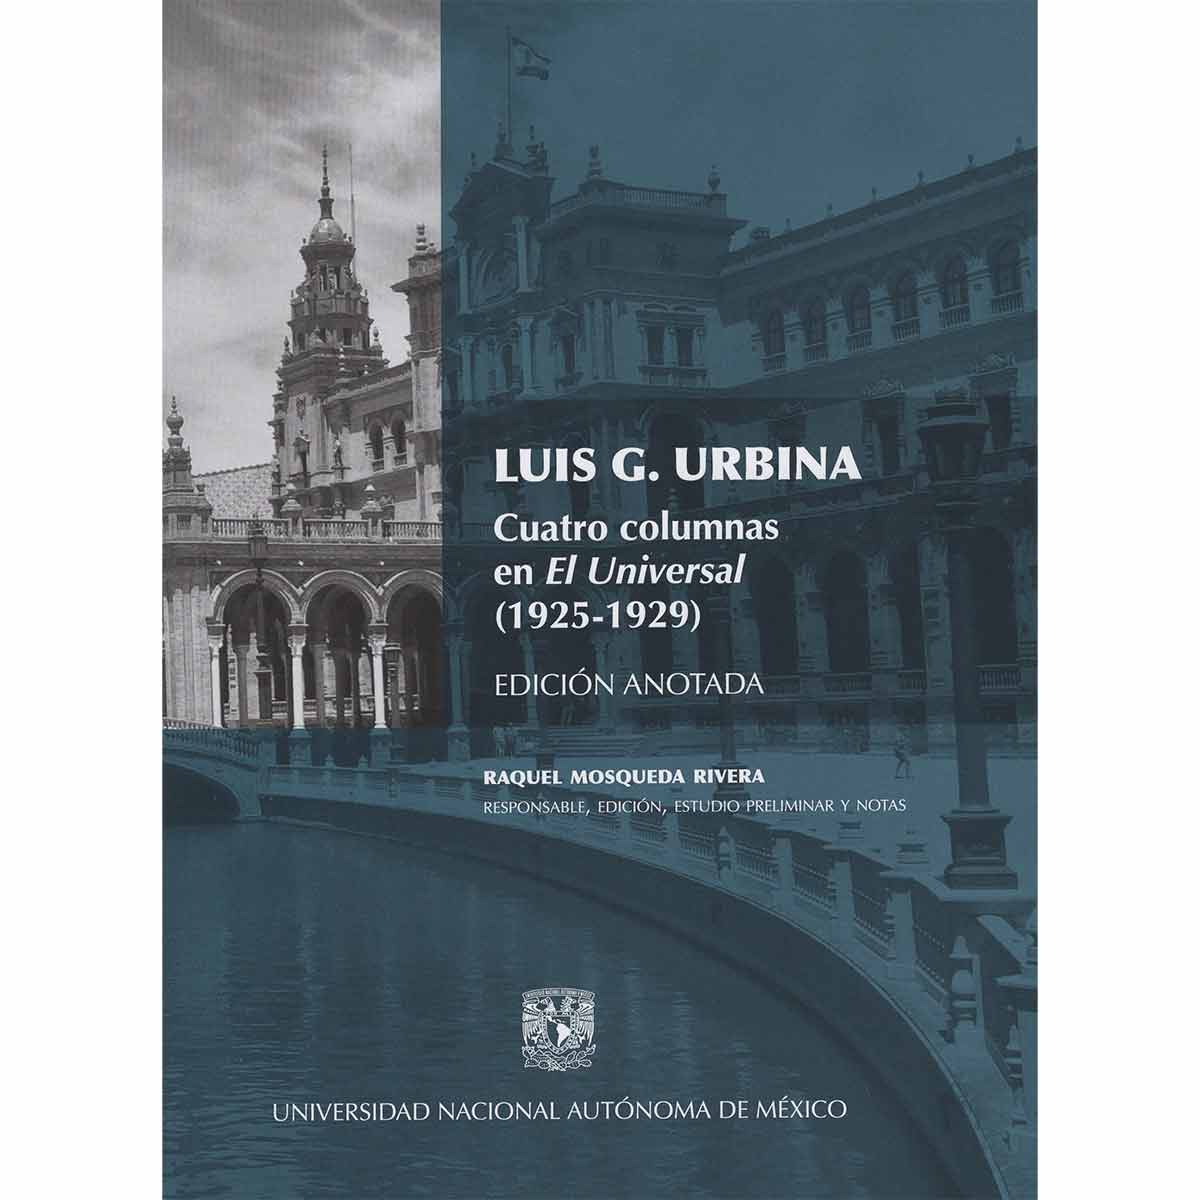 LUIS G. URBINA. CUATRO COLUMNAS EN EL UNIVERSAL (1925-1929)